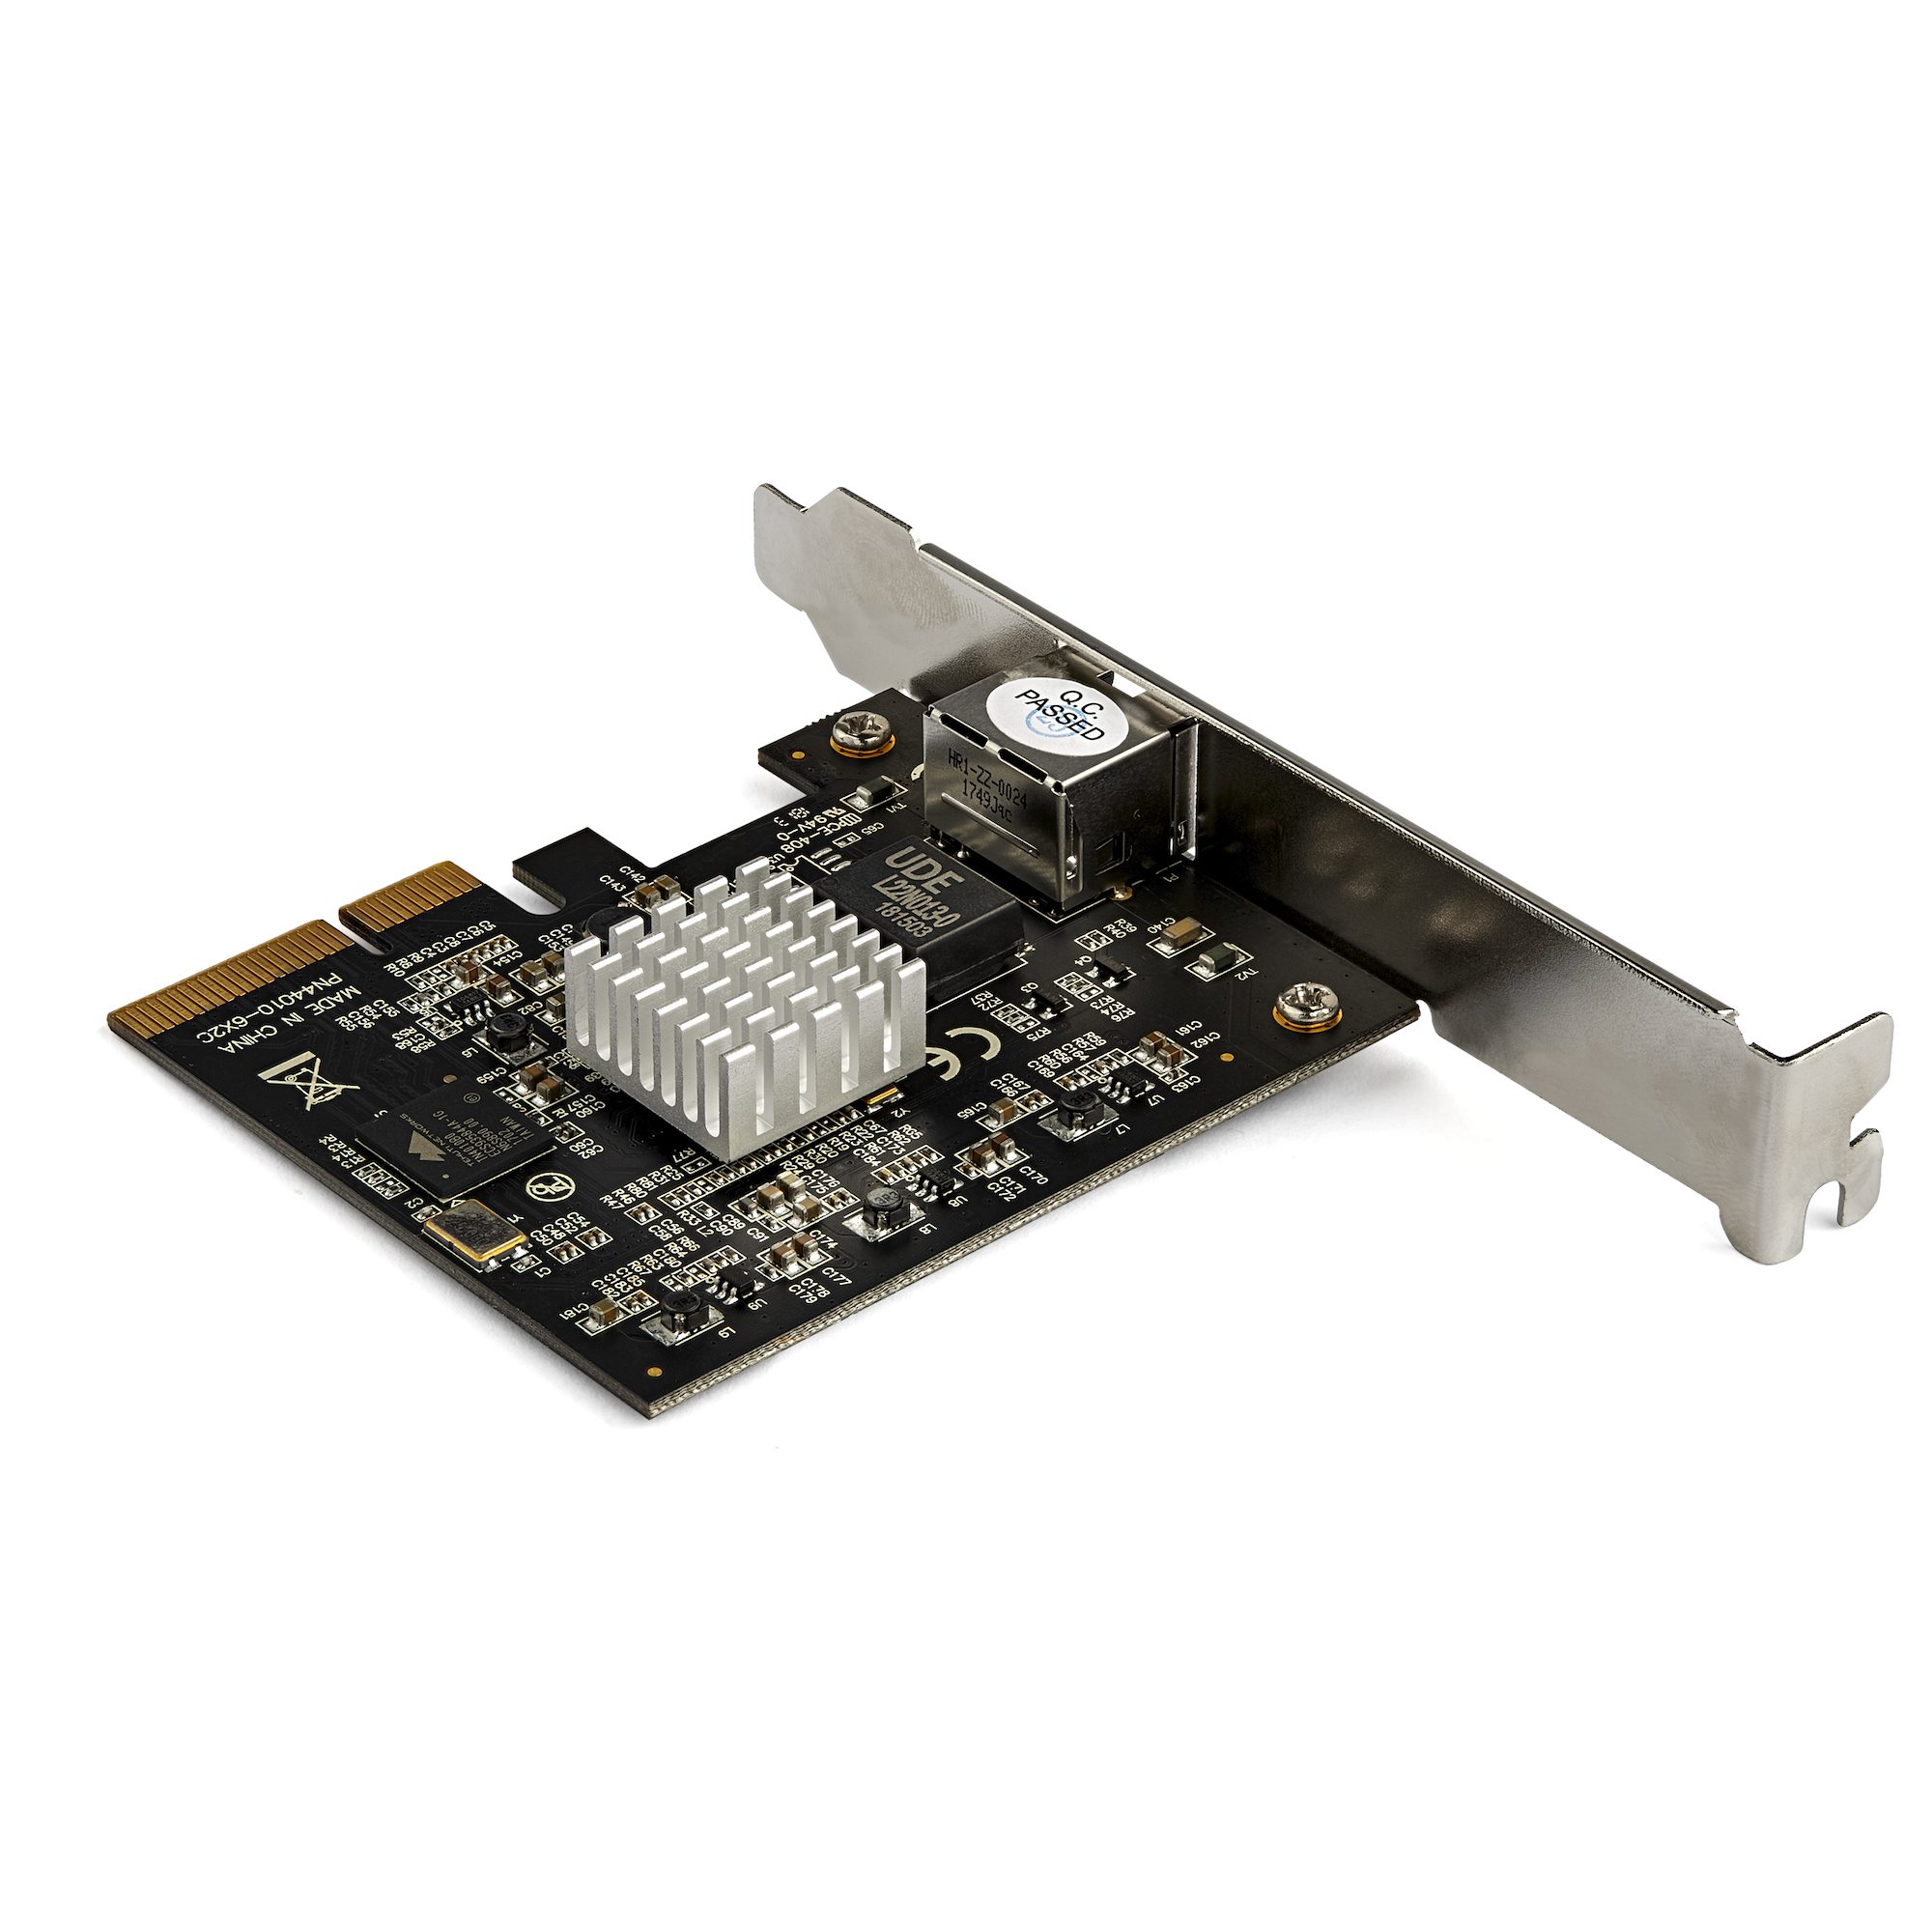 1ポート 4スピード NBASE-T対応 PCIeイーサネットカード - ネットワークアダプタ カード | StarTech.com 日本